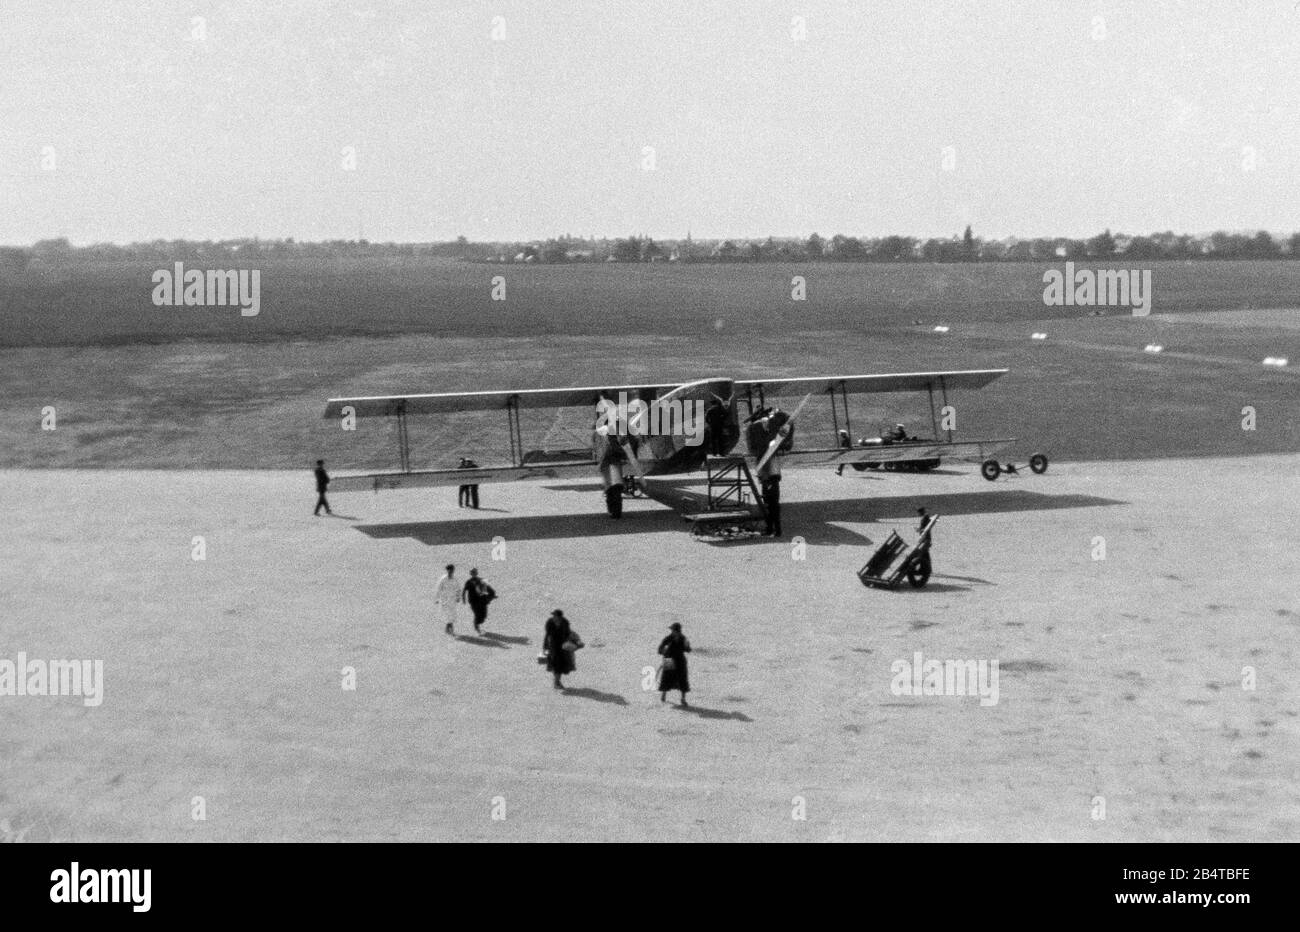 Ein klassisches Schwarzweißfoto, das Passagiere zeigt, die sich aus dem Passagierflugzeug TA Liore et Olivier 213, Registrierung F- AJBE, der Air Union, die Air France wurde, aussteigen. Foto aufgenommen im Oxford Aerodrome, Airport, im Jahr 1933. Stockfoto